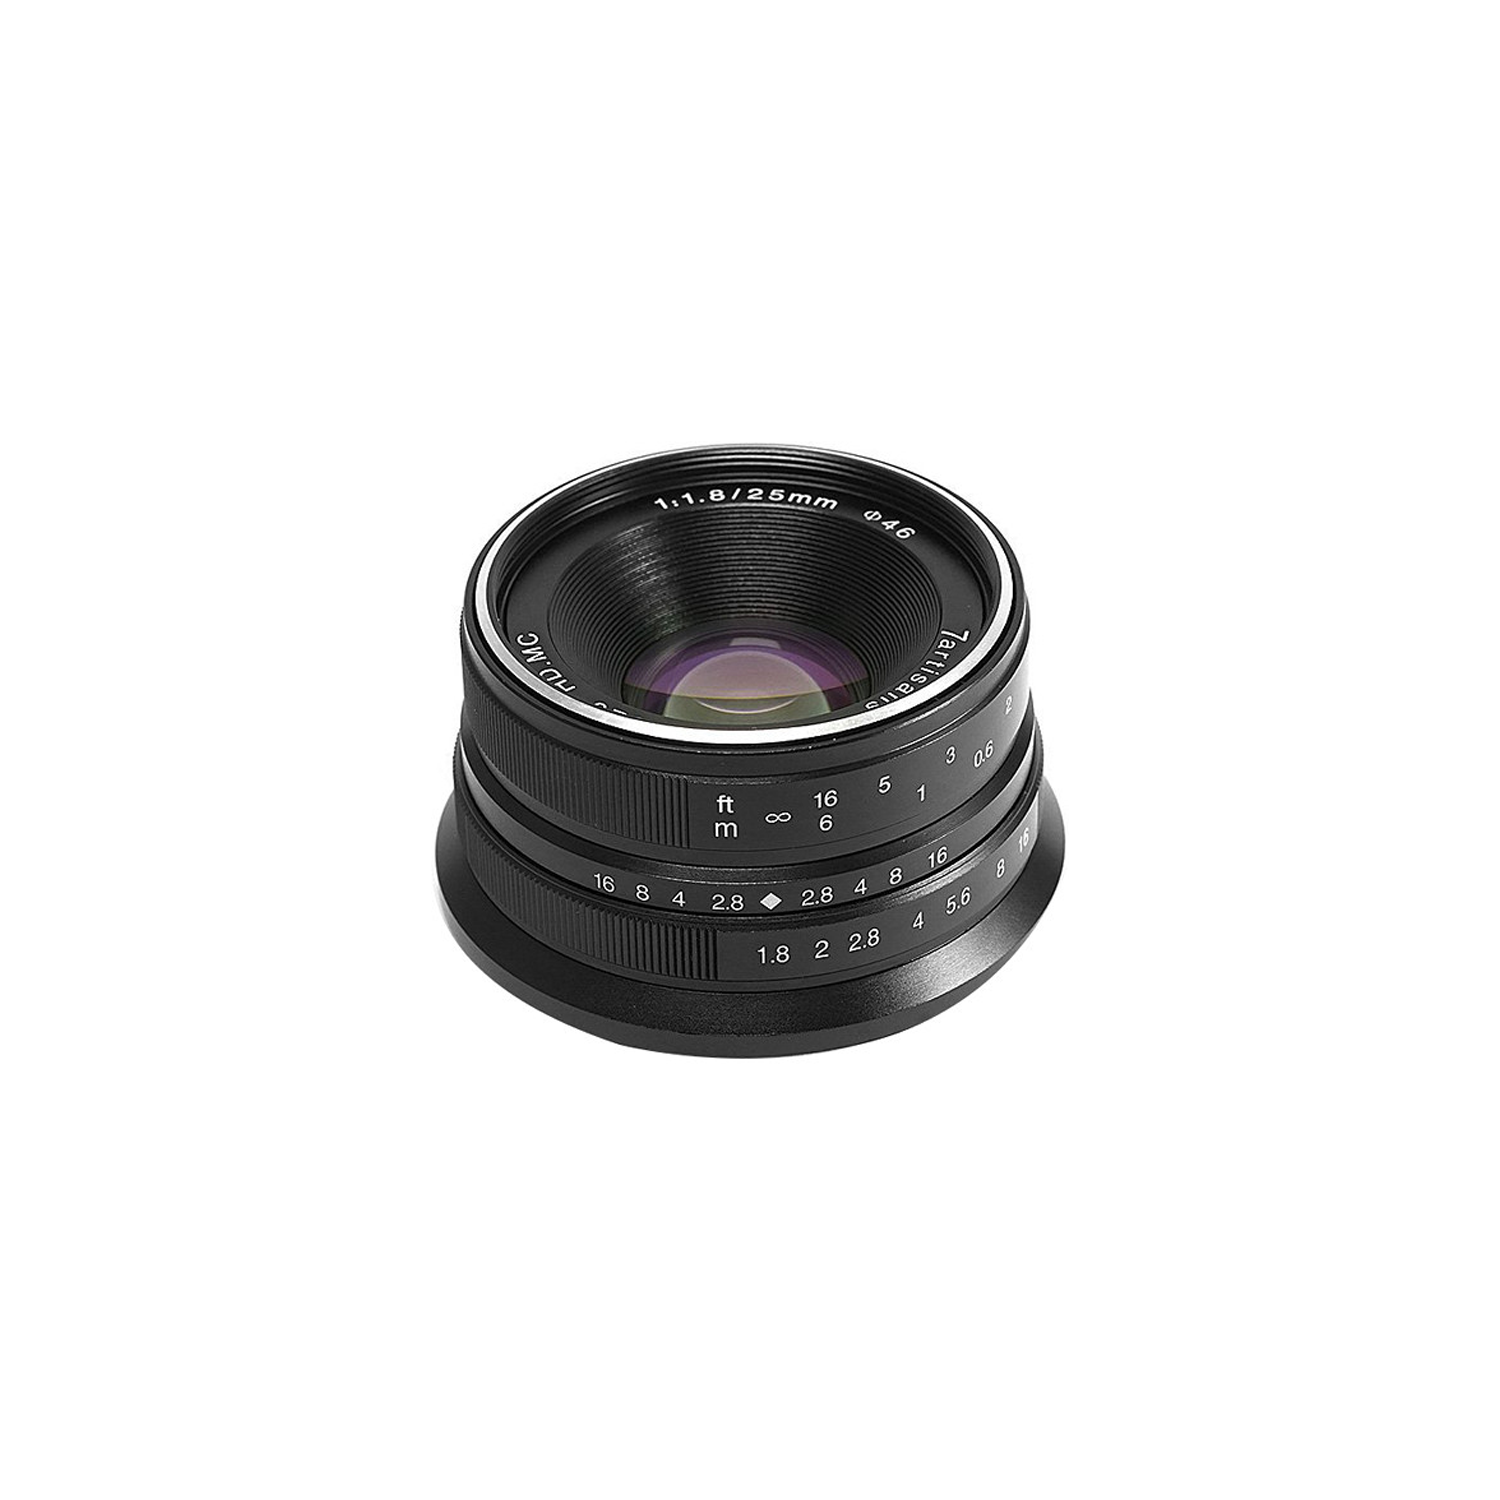 7artisans Photoelectric 25mm f/1.8 Lens for Sony E Mount